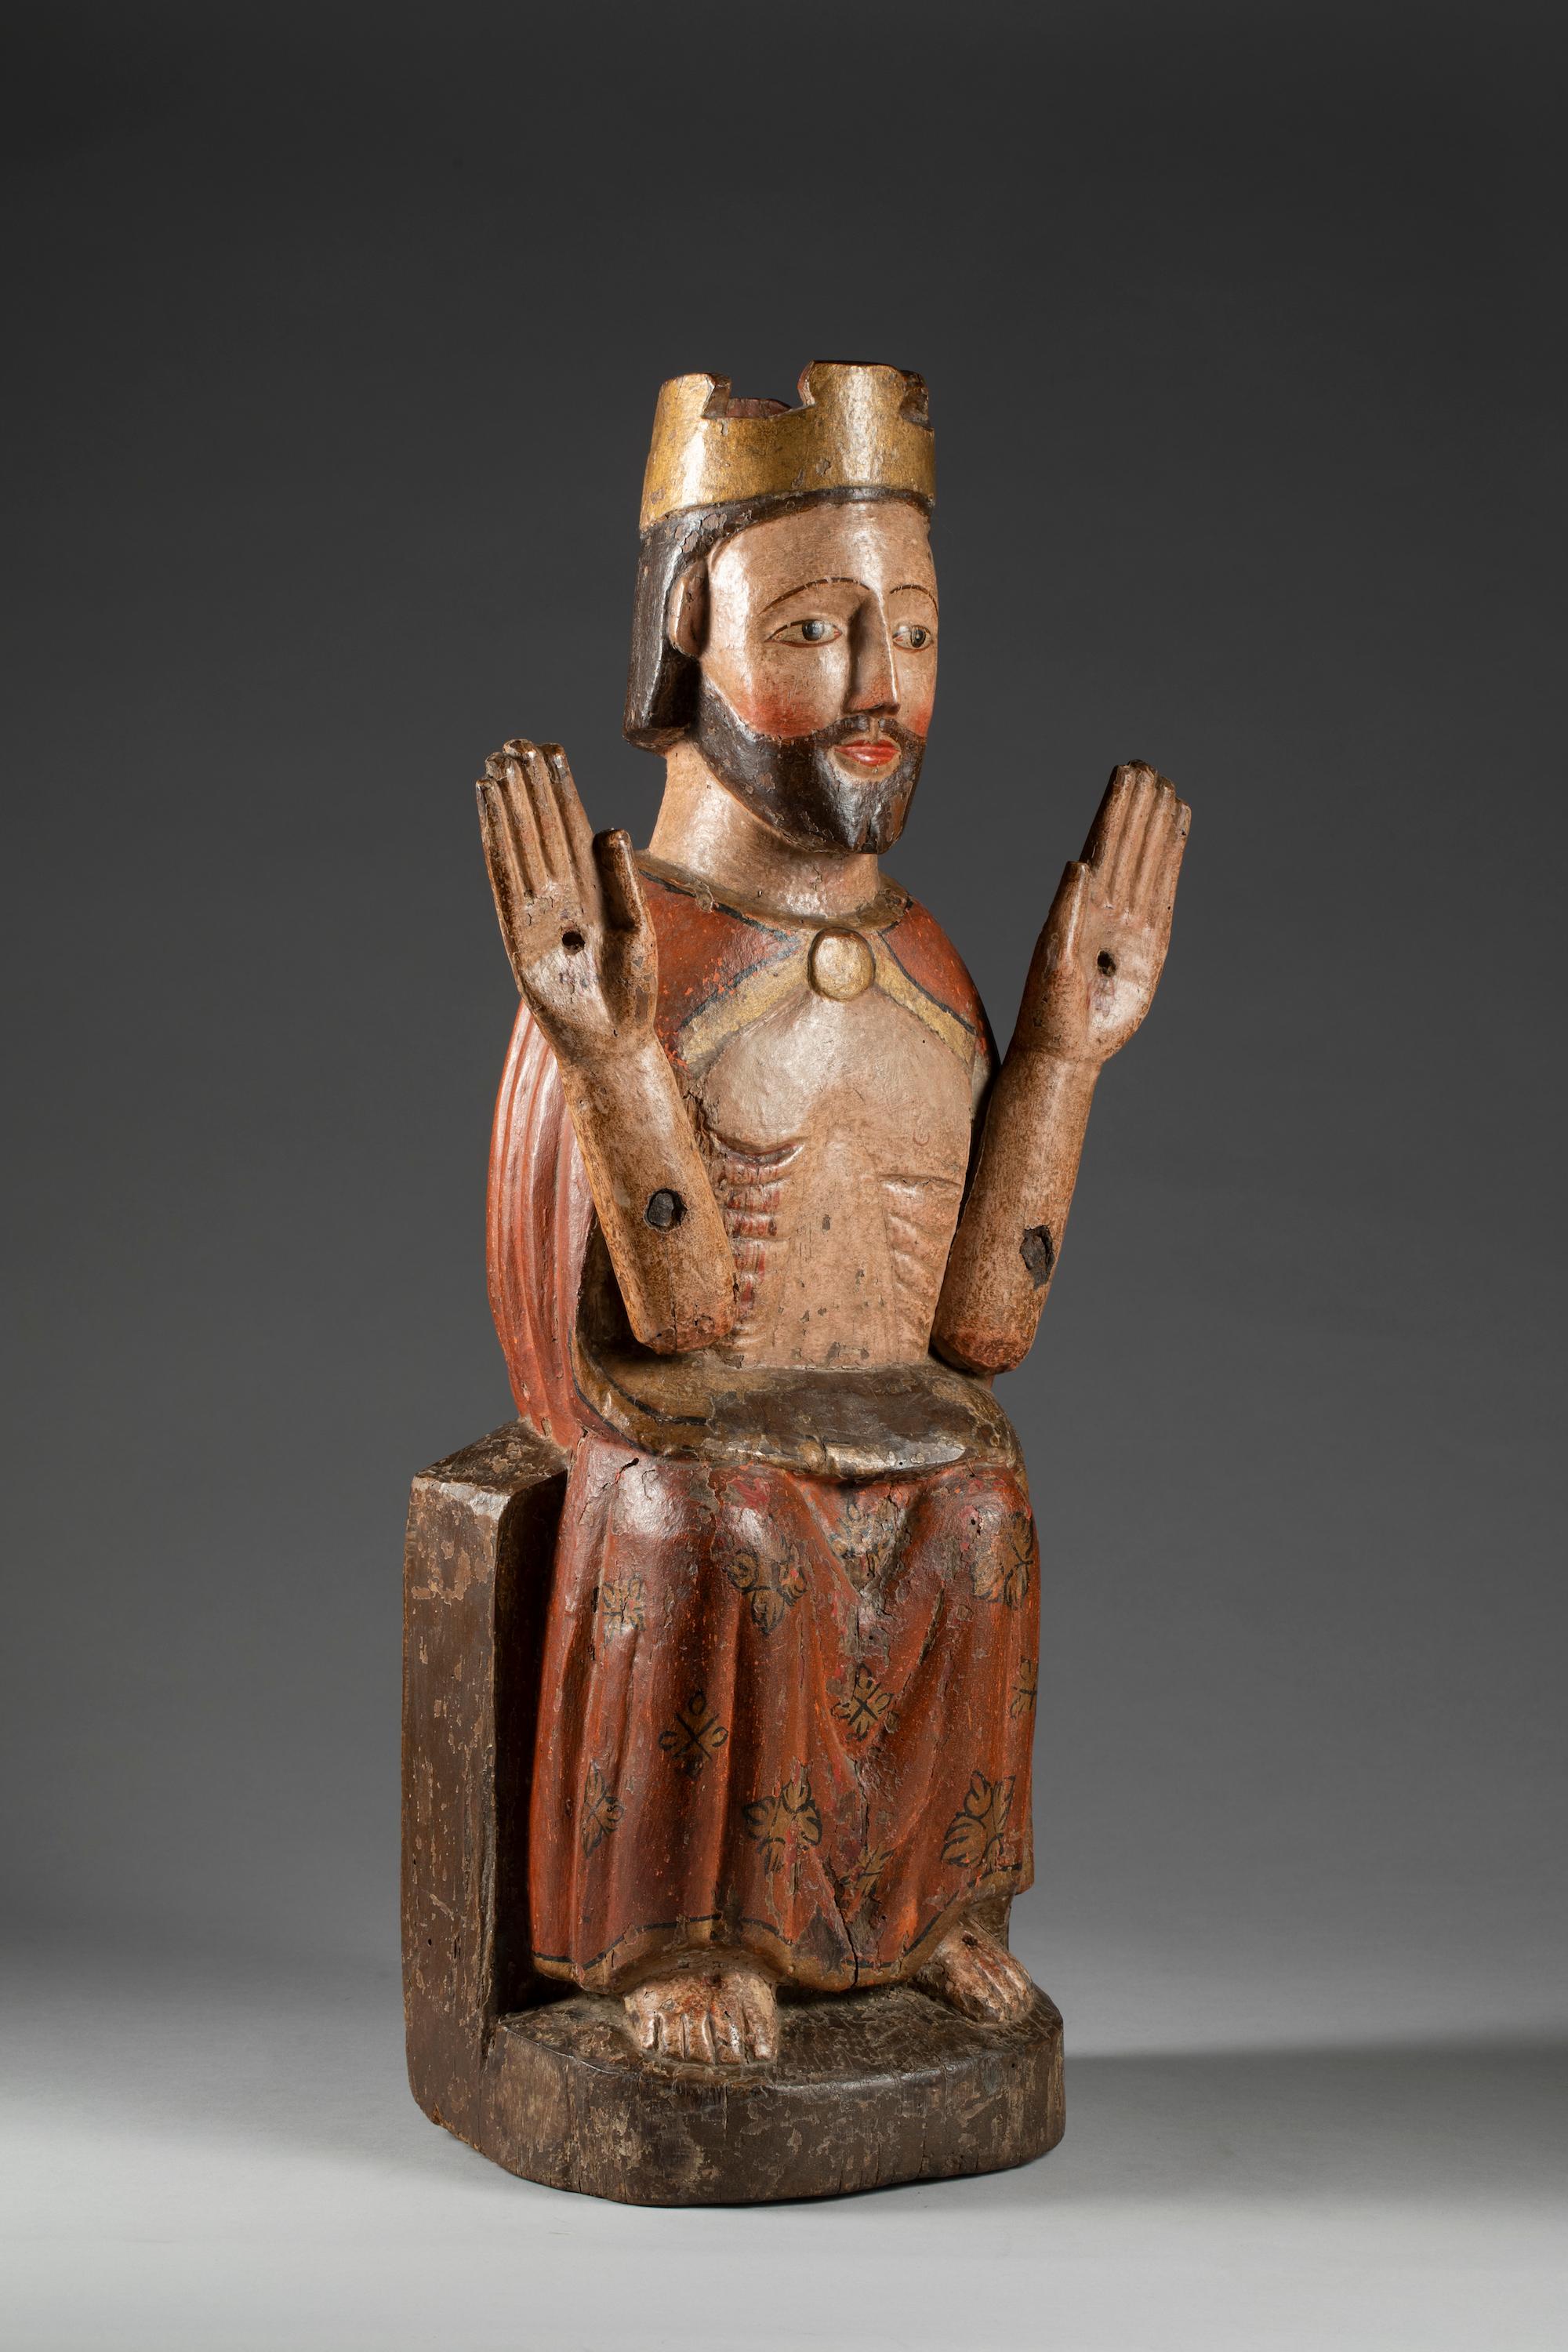 Der thronende Christus

Südamerika, 17. Jahrhundert

cm 64x22x18,5

Polychrome Holzskulptur, die Christus in einem roten, goldumrandeten Mantel gehüllt, gekrönt und auf einem Thron sitzend darstellt, mit den Stigmata an Händen und Füßen und der